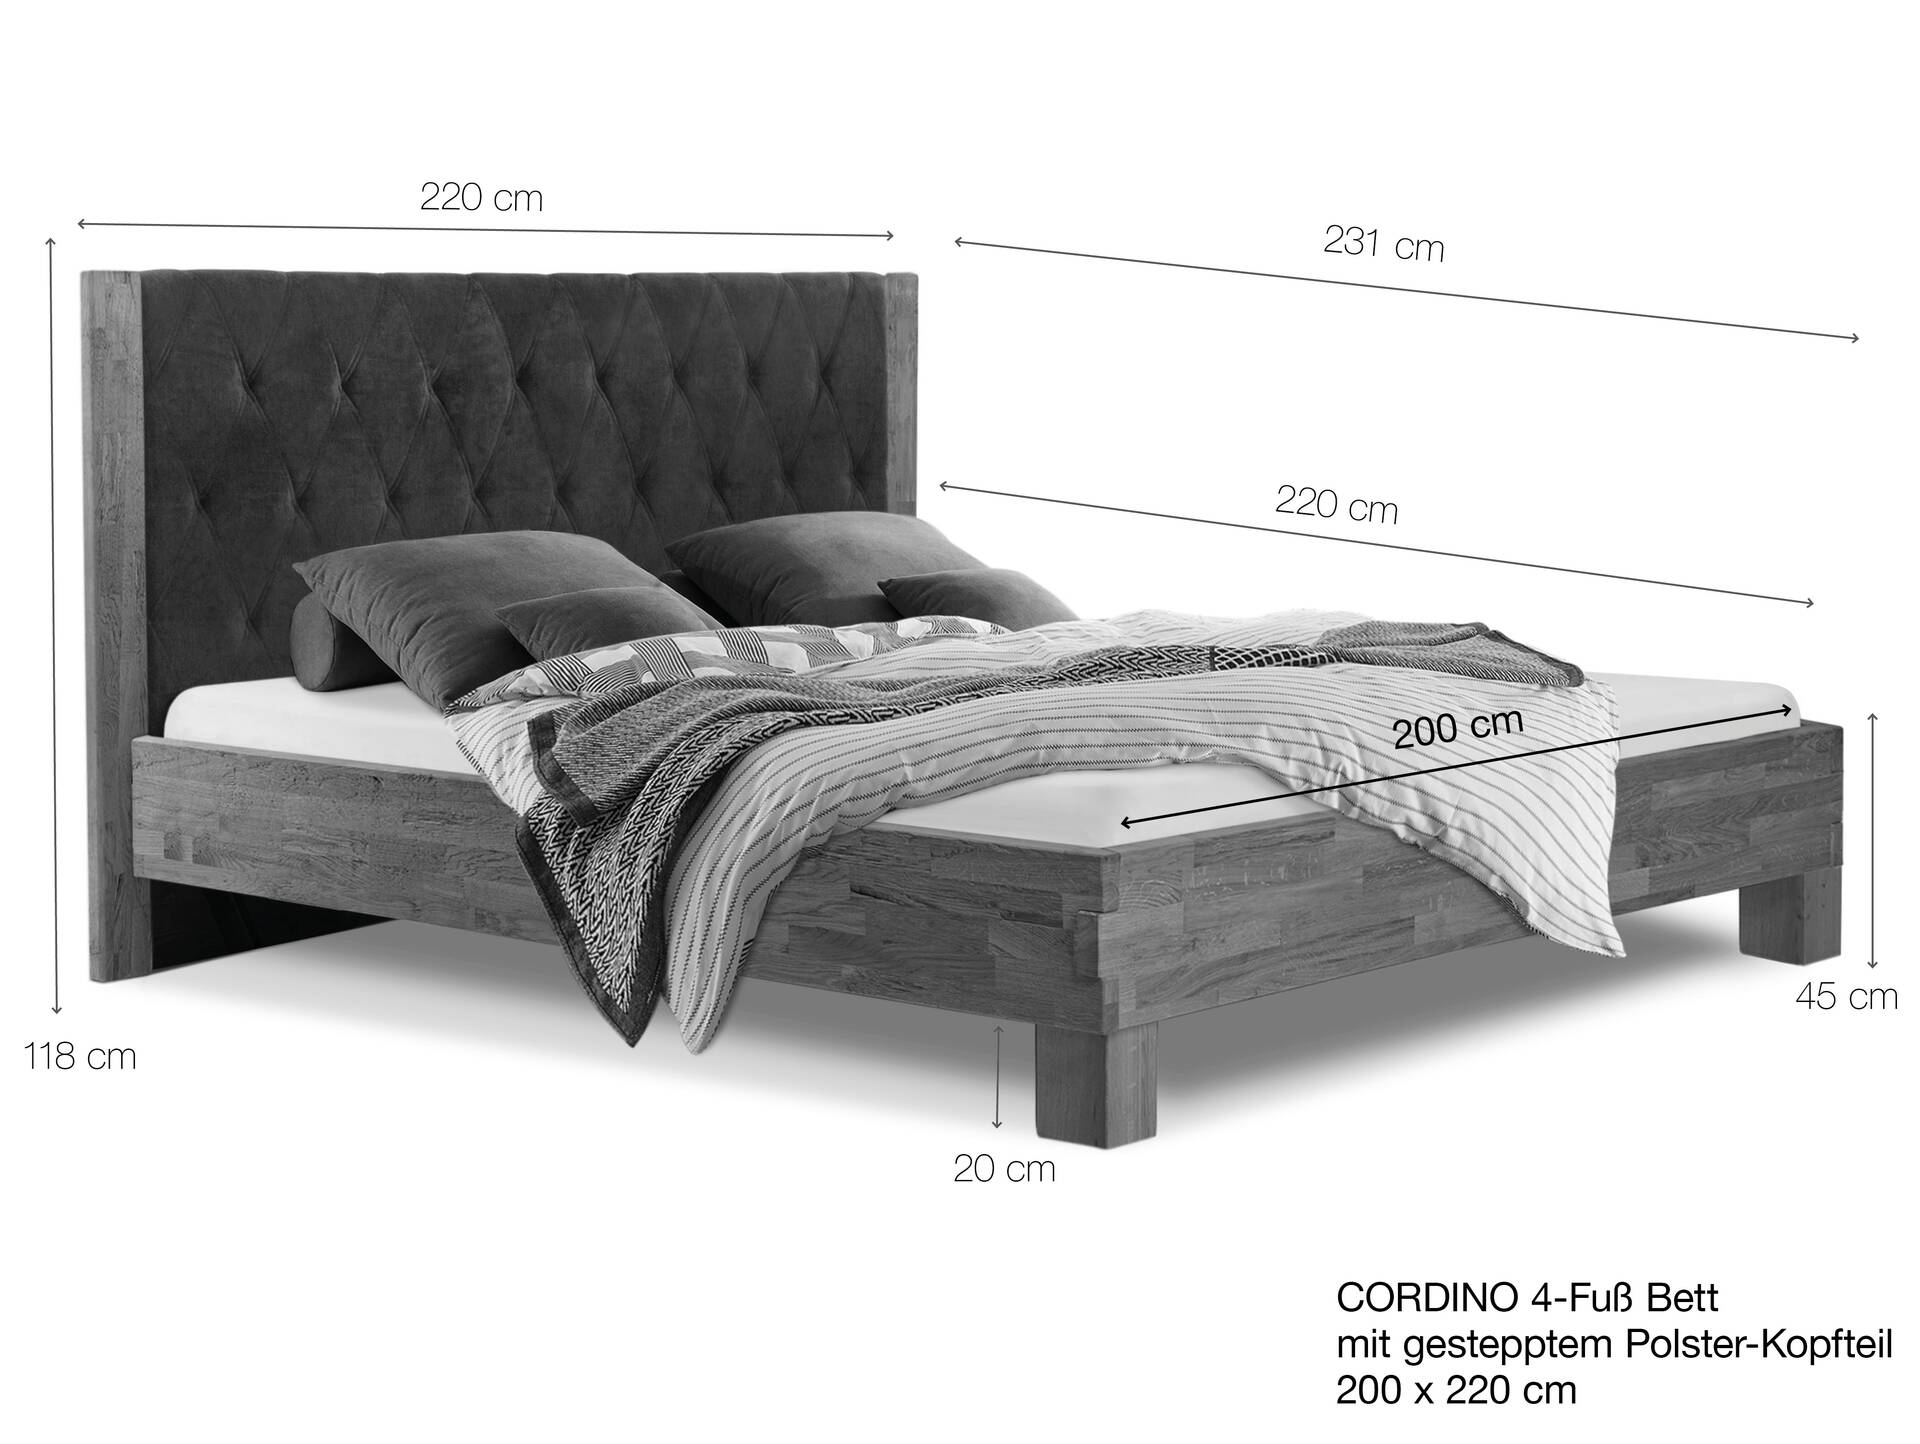 CORDINO 4-Fuß-Bett aus Eiche mit gestepptem Polster-Kopfteil, Material Massivholz 200 x 220 cm | Eiche lackiert | Stoff Braun | gebürstet